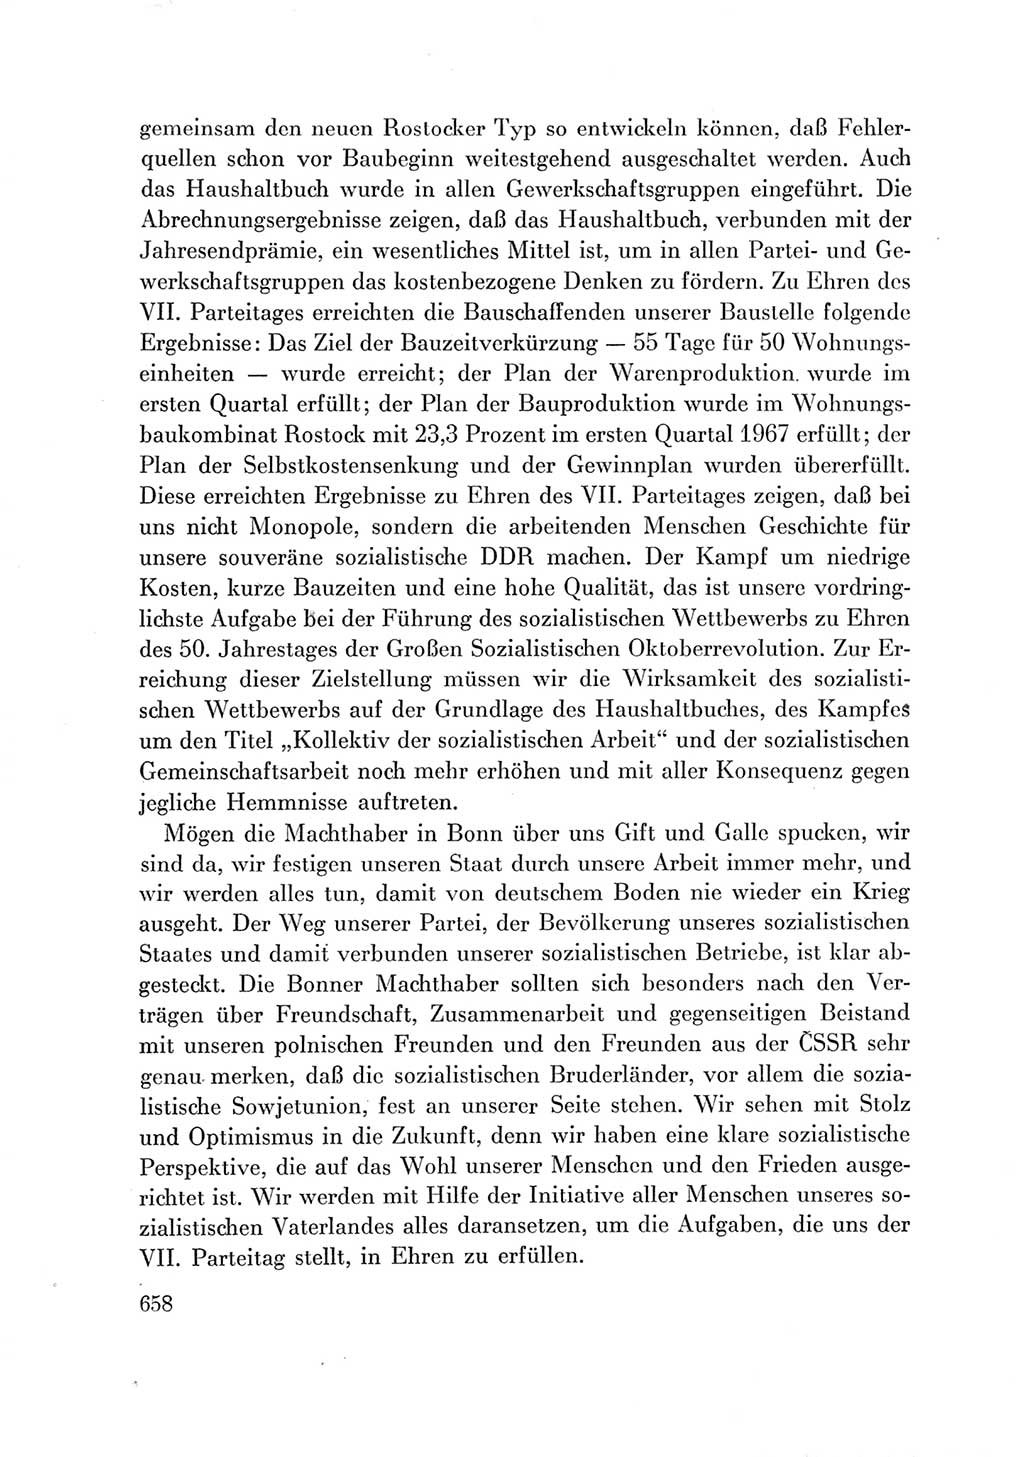 Protokoll der Verhandlungen des Ⅶ. Parteitages der Sozialistischen Einheitspartei Deutschlands (SED) [Deutsche Demokratische Republik (DDR)] 1967, Band Ⅲ, Seite 658 (Prot. Verh. Ⅶ. PT SED DDR 1967, Bd. Ⅲ, S. 658)